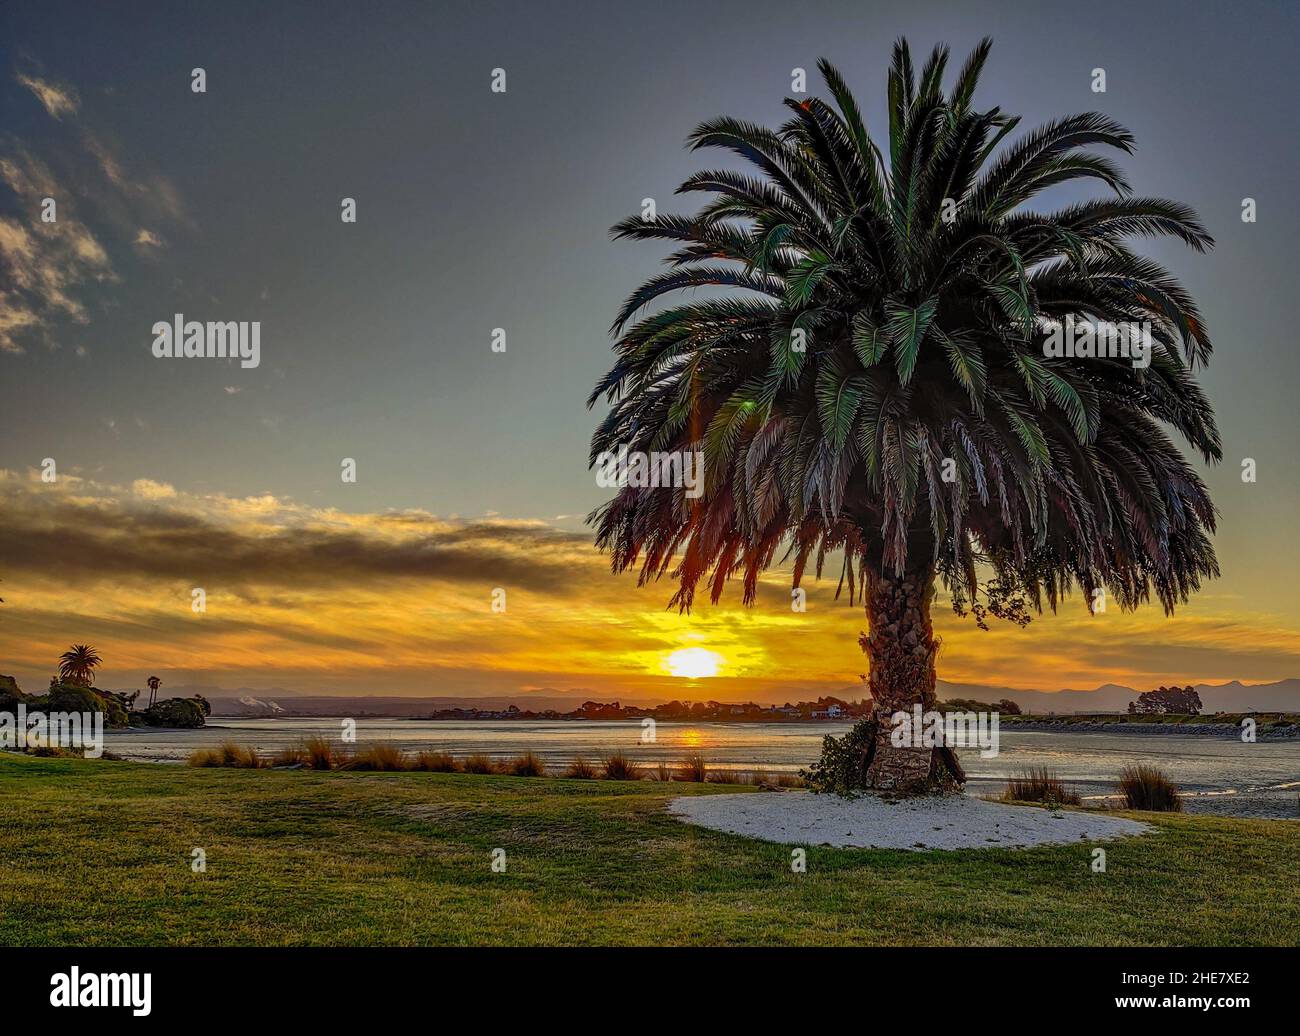 Vista panoramica della palma sul prato con lo sfondo del mare al tramonto sotto il cielo nuvoloso Foto Stock